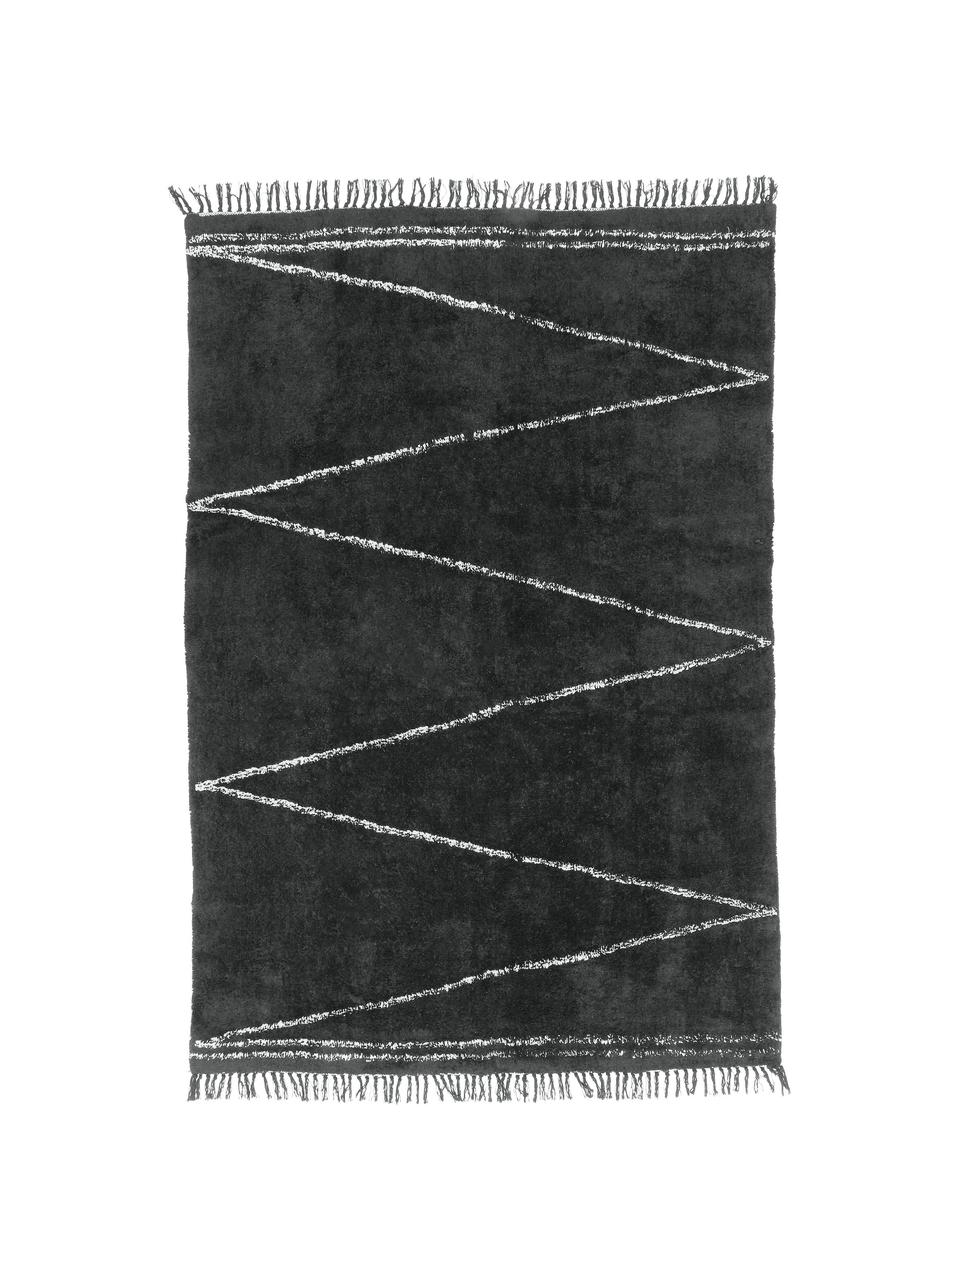 Handgetufteter Baumwollteppich Asisa mit Zickzack-Muster und Fransen, Anthrazit, B 200 x L 300 cm (Größe L)